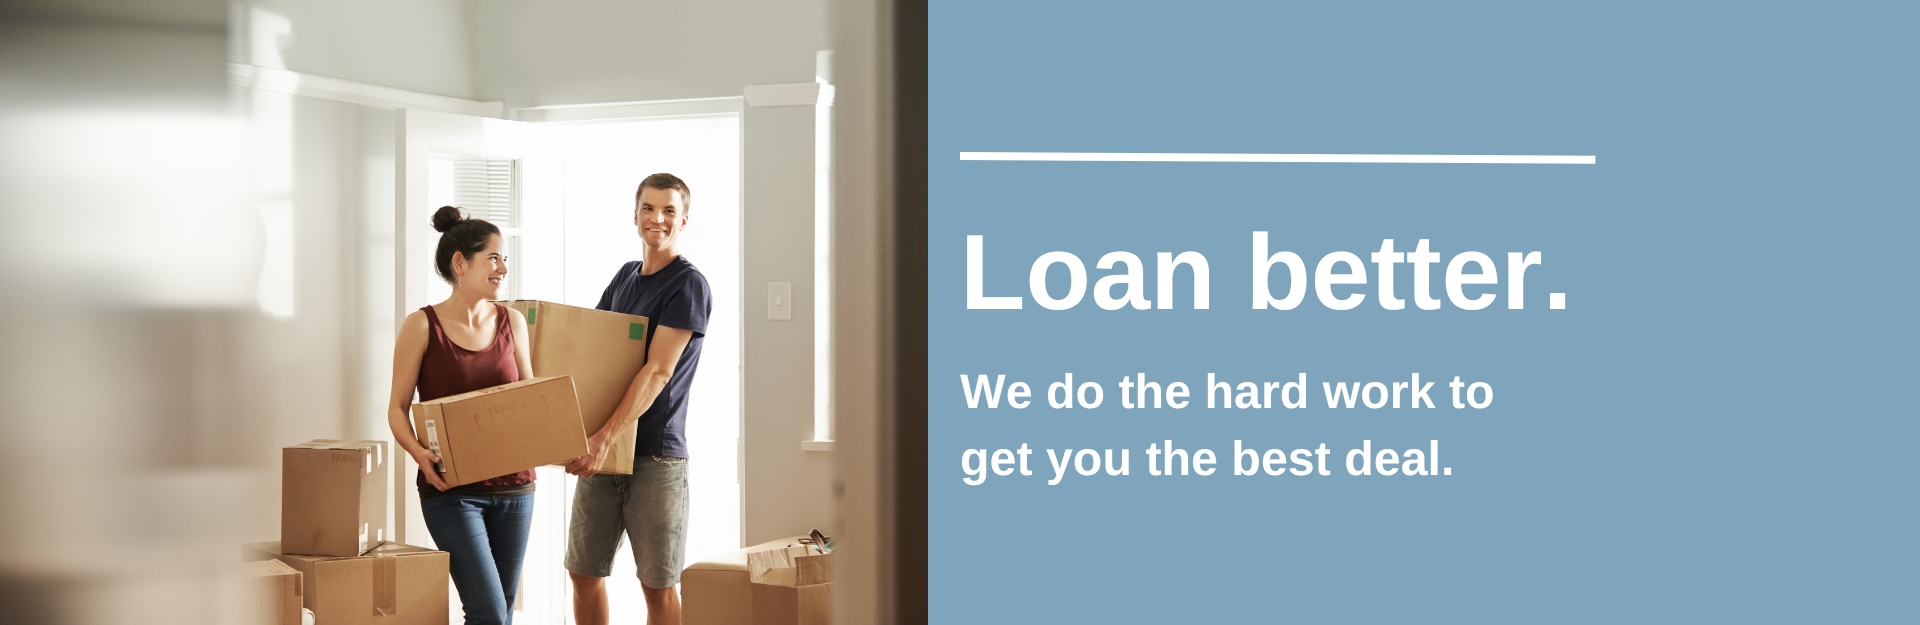 Website_Loan_Better_-_Best_Deal_banner.png